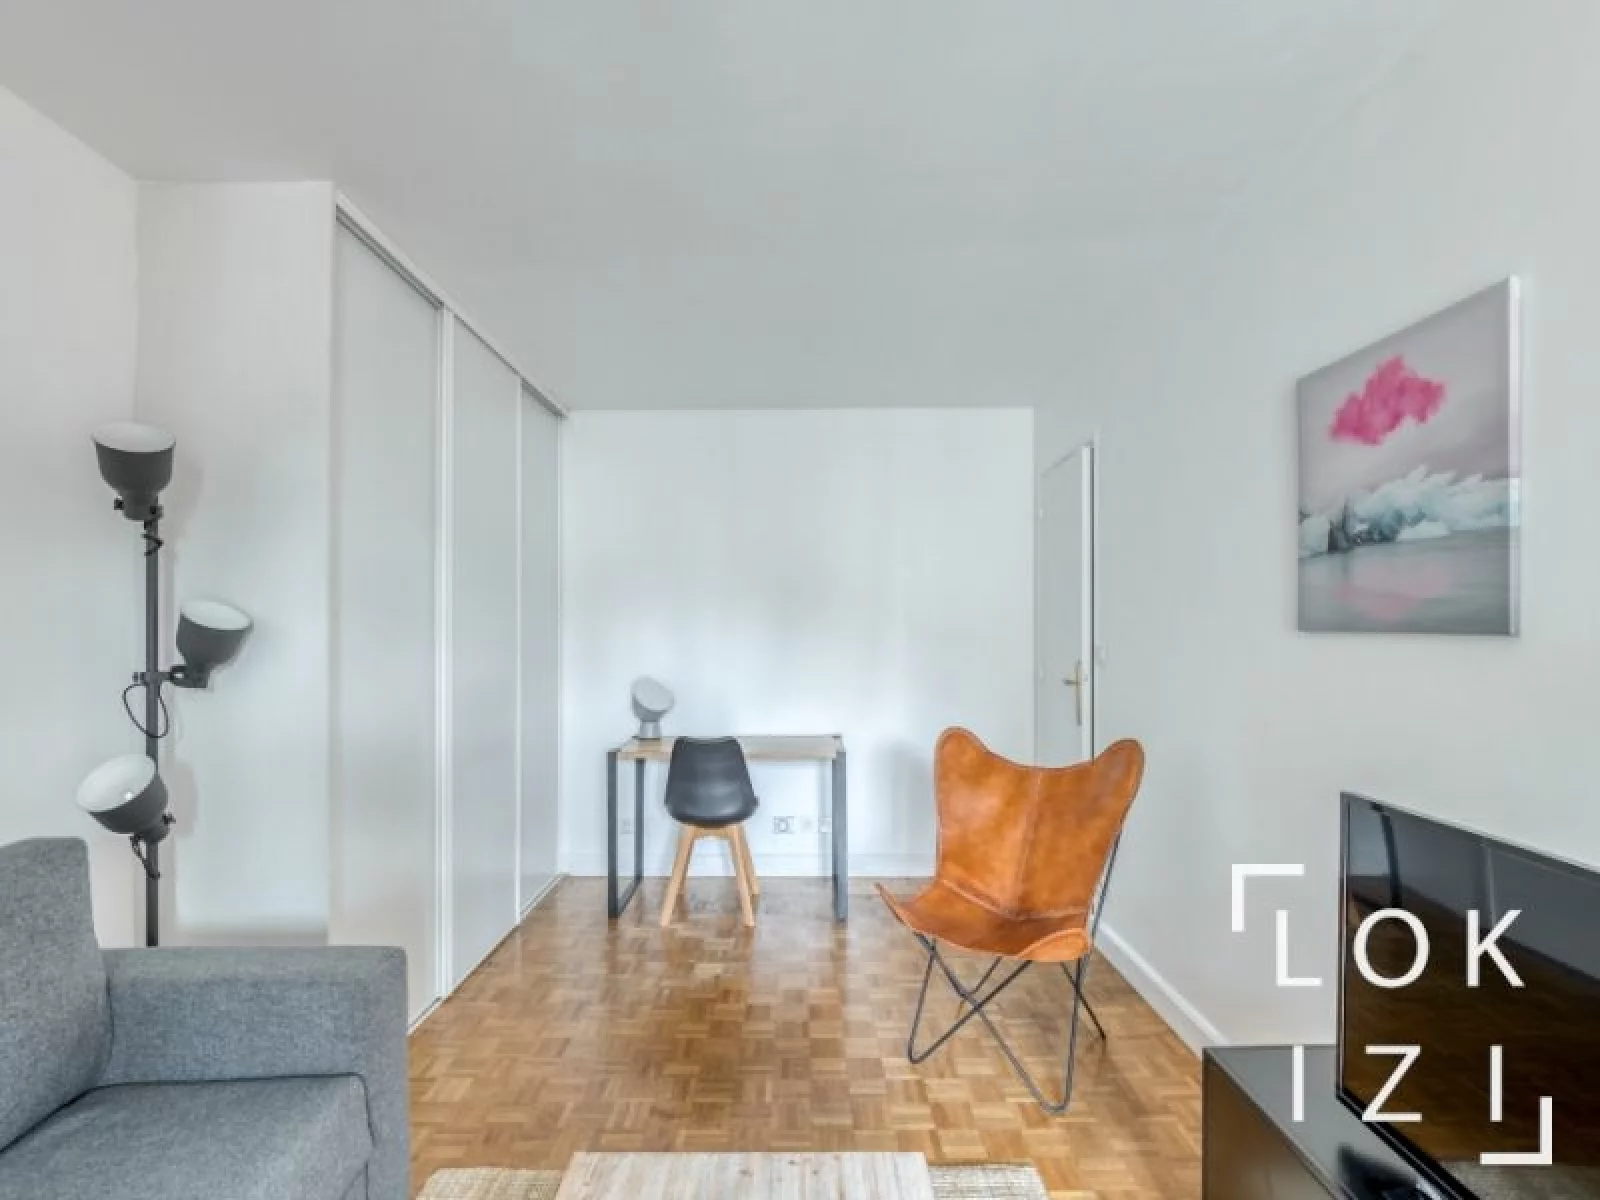 Location studio meublé de 24m² (Paris 20)